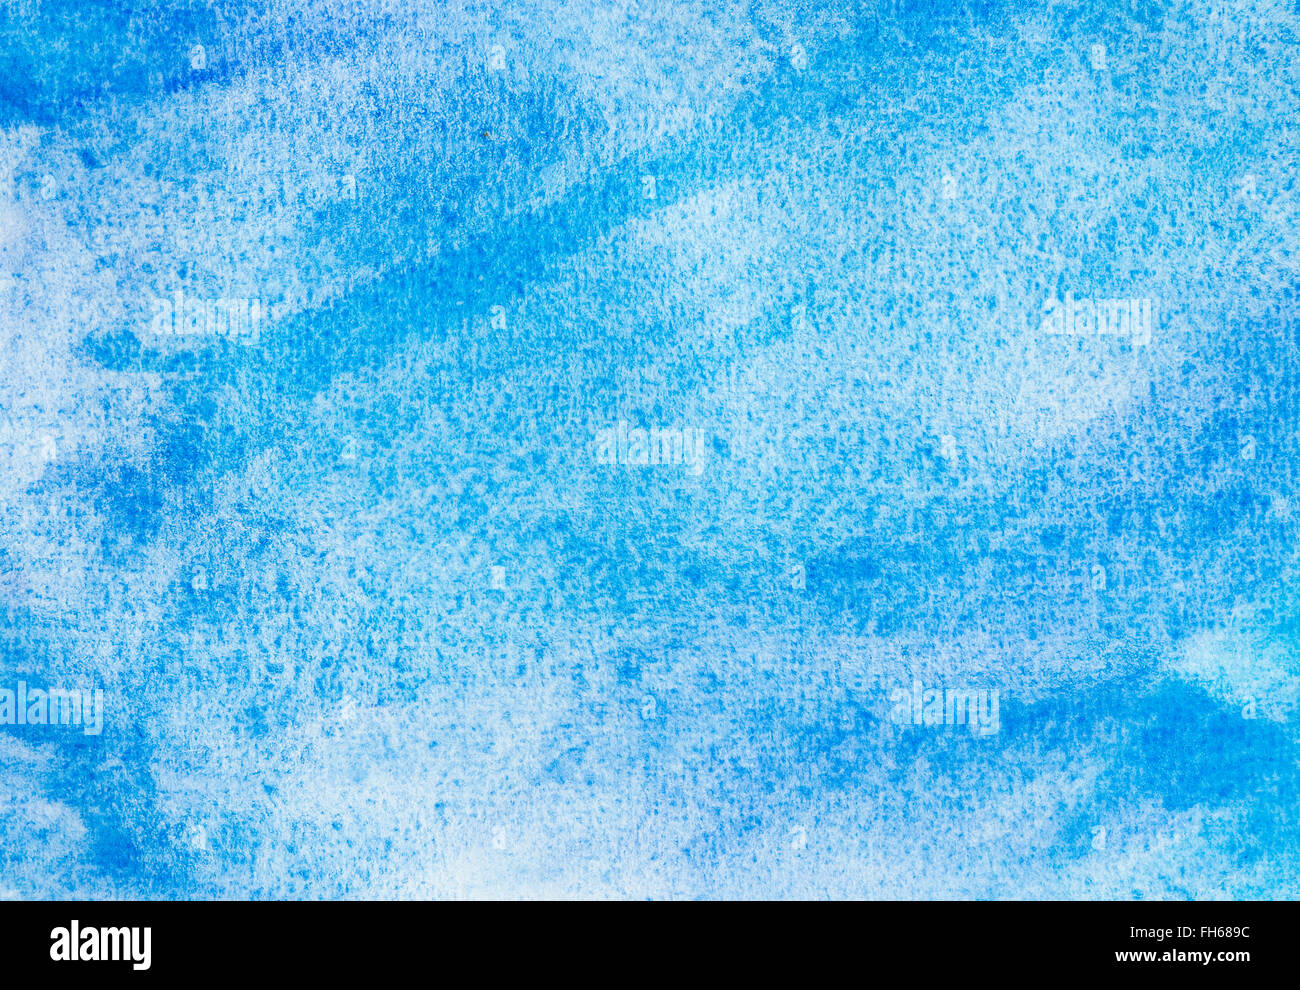 Aquarell blau cyan Abstrakt Hintergrund. Chaotischen Pinselstriche. als Hintergrund oder Design Element zu verwenden. Stockfoto